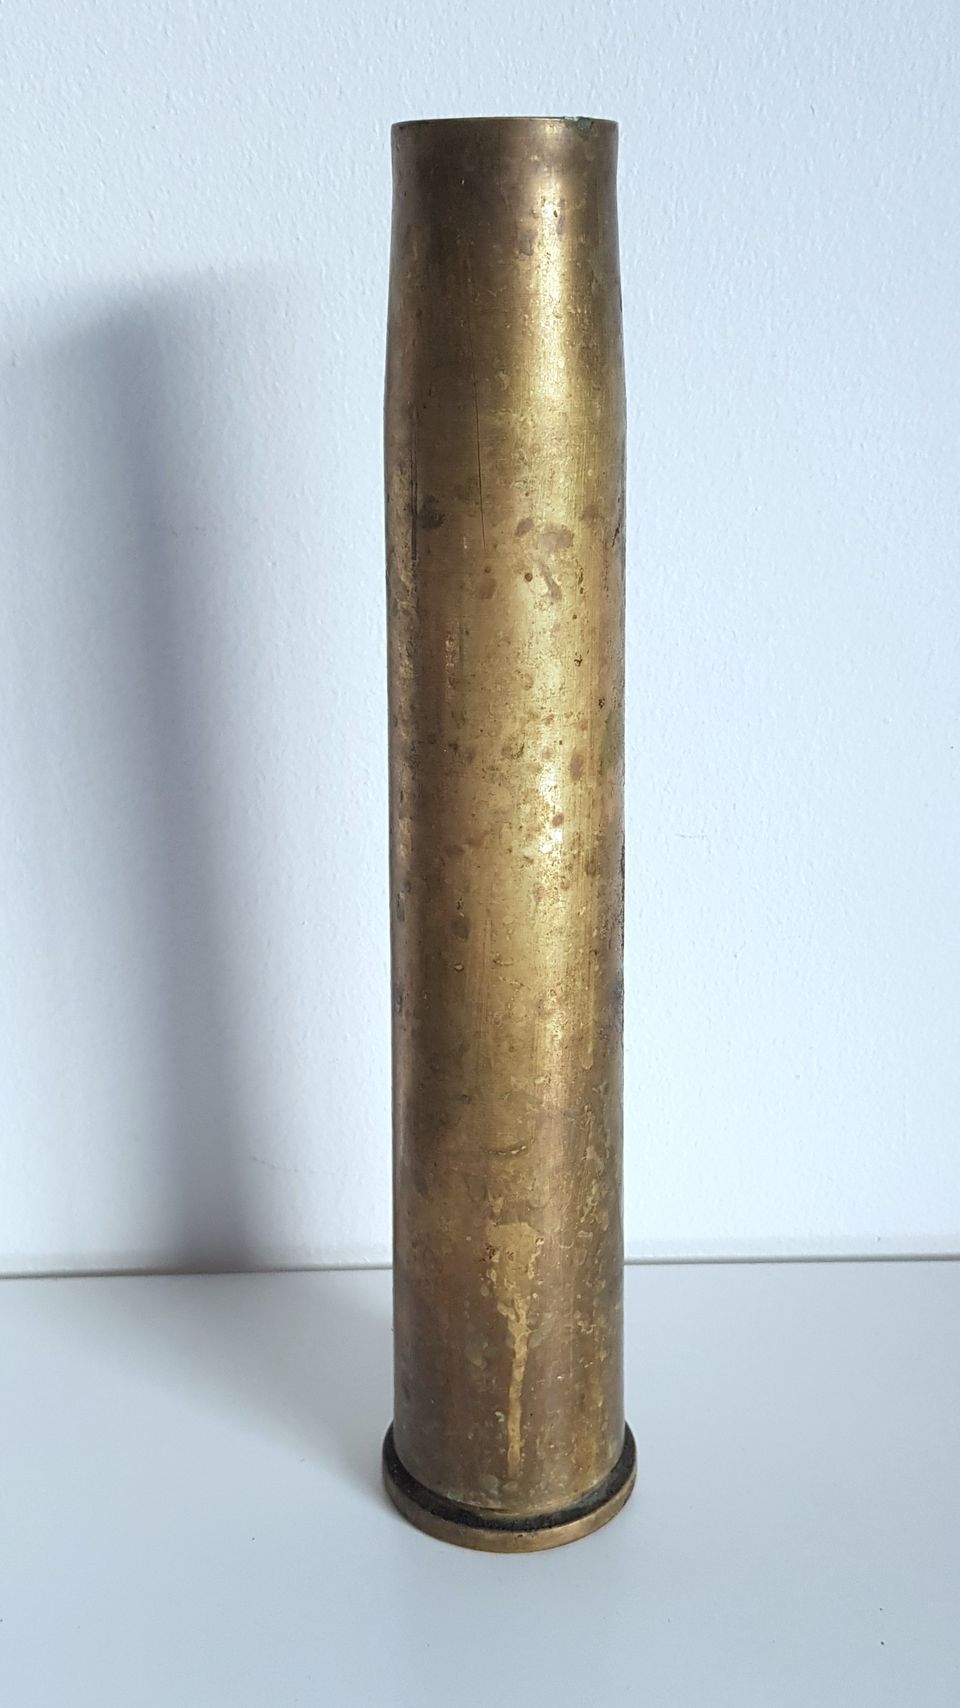 4cm Flak 28 hylsy 1941 Jatkosota militaria